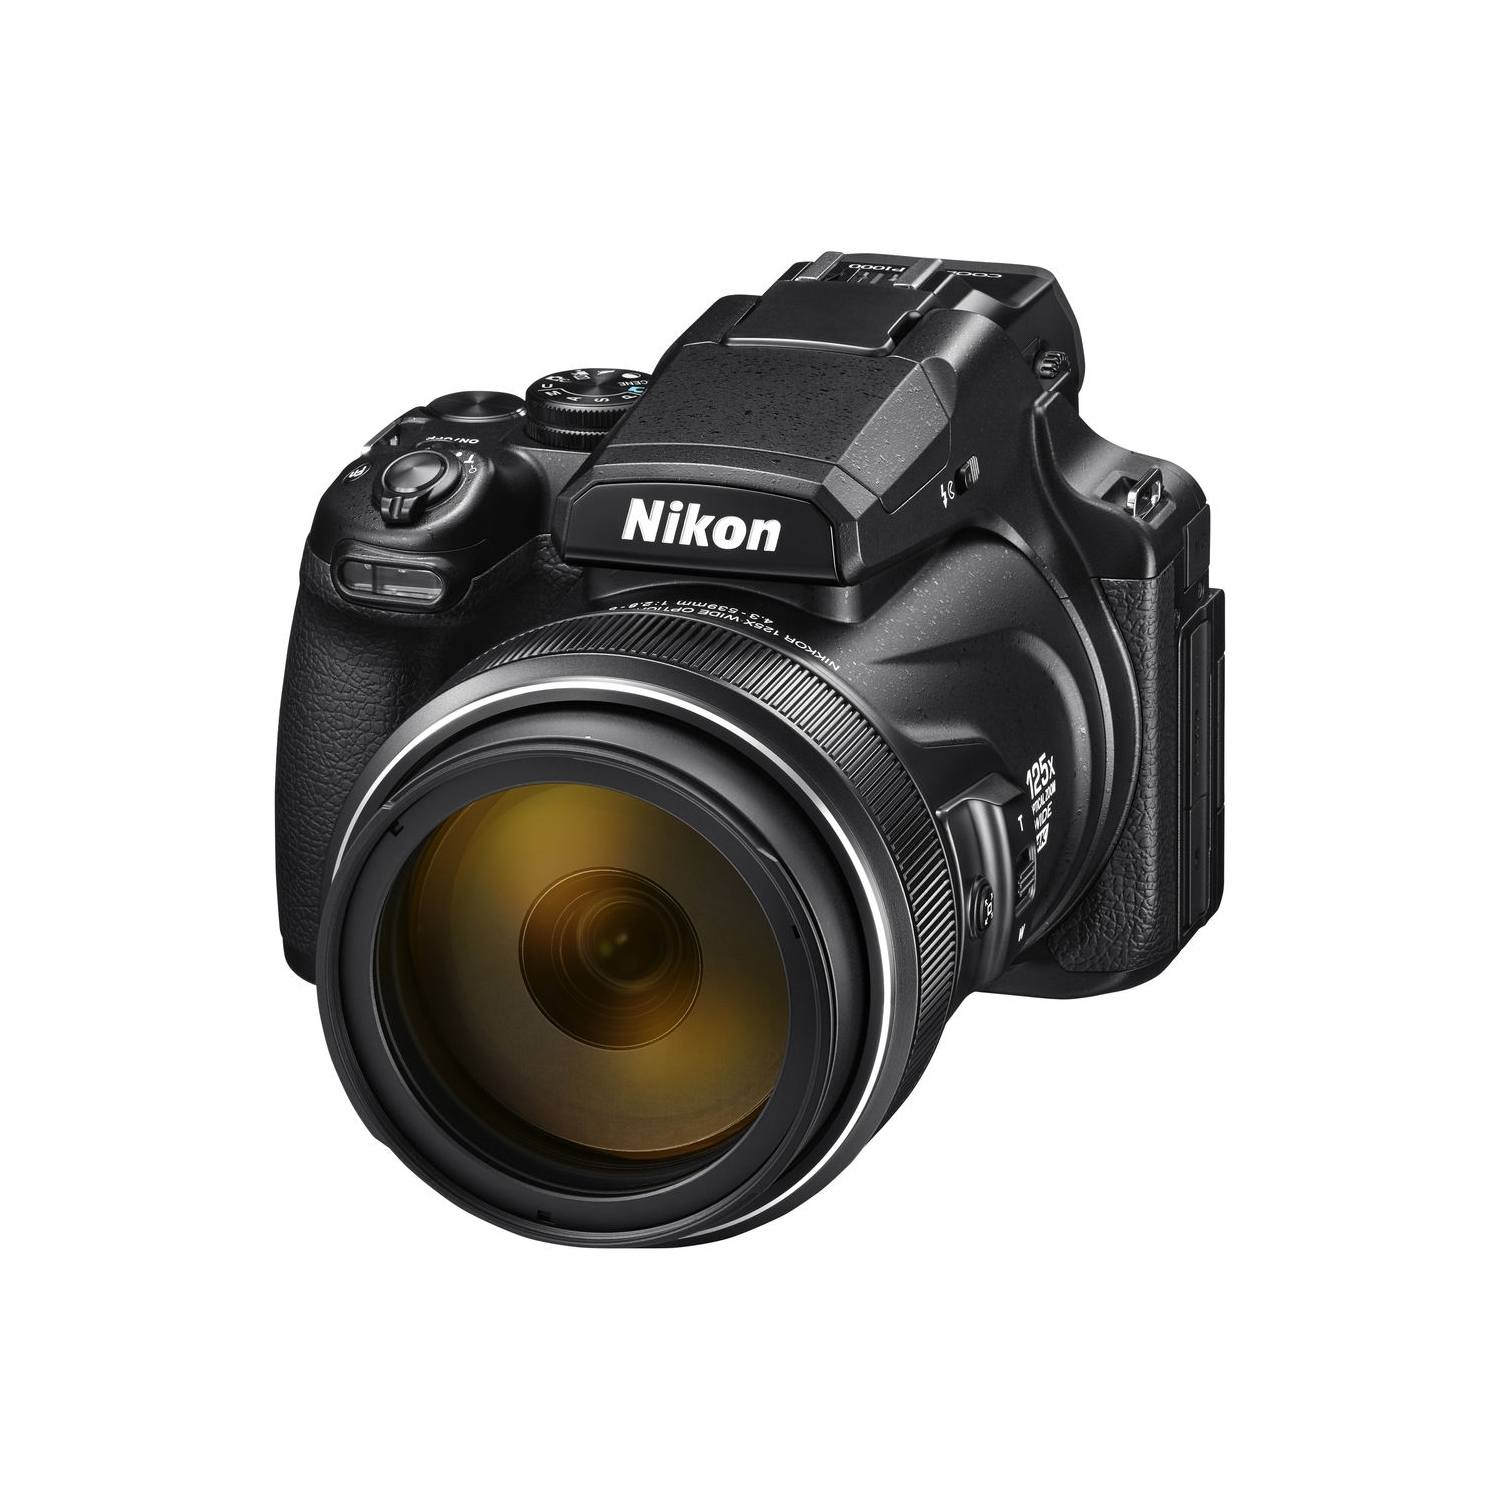 Nikon Coolpix S8200 compacts LENS ZOOM UNIT ASSEMBLY OEM PART 